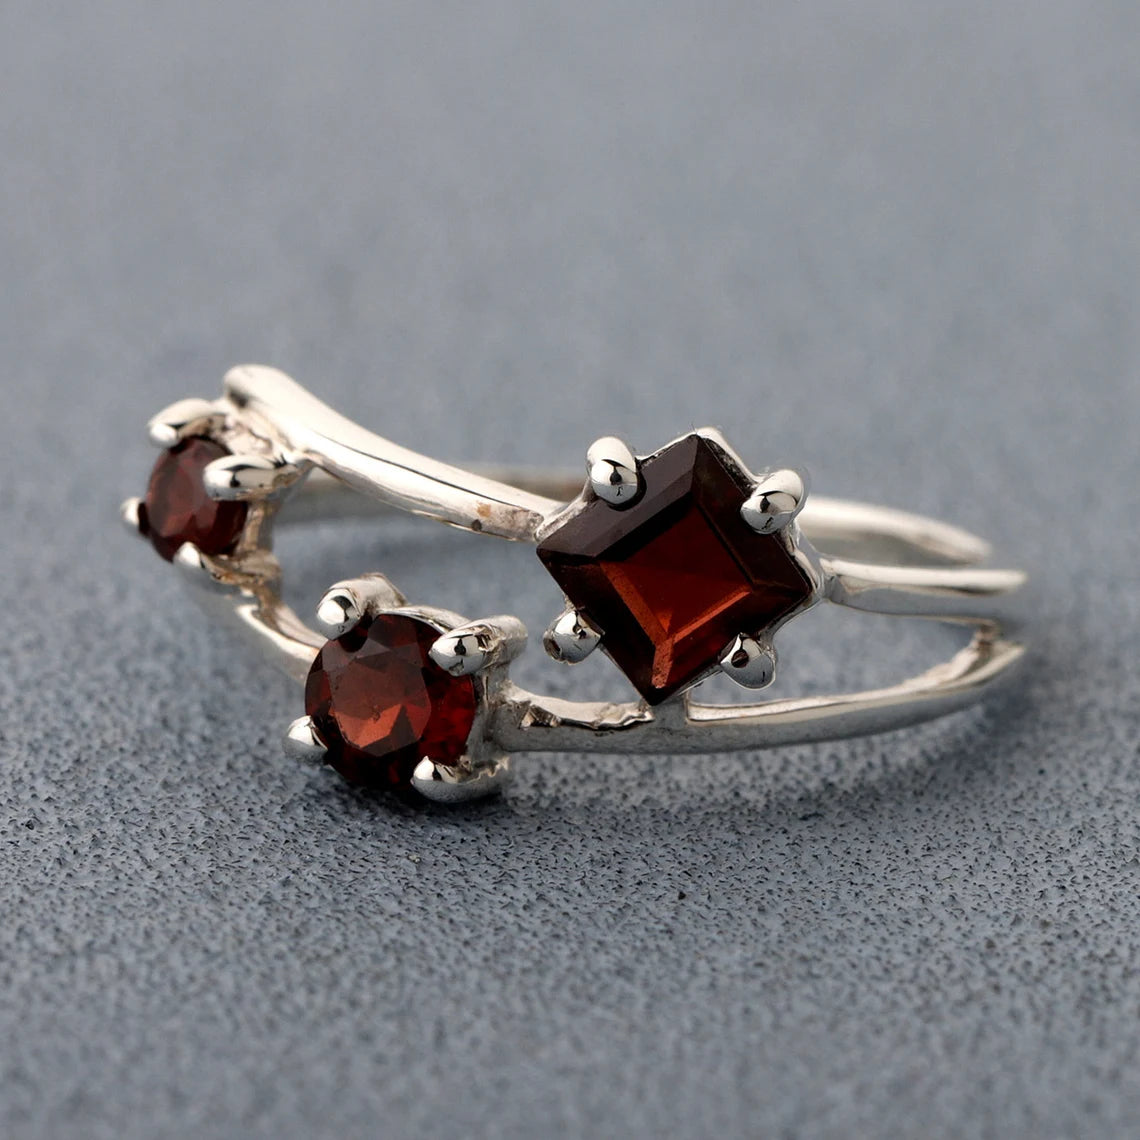 Garnet Gemstone Ring - engagement ring - prong setting ring - 925 sterling silver - Multi Gemstone Ring